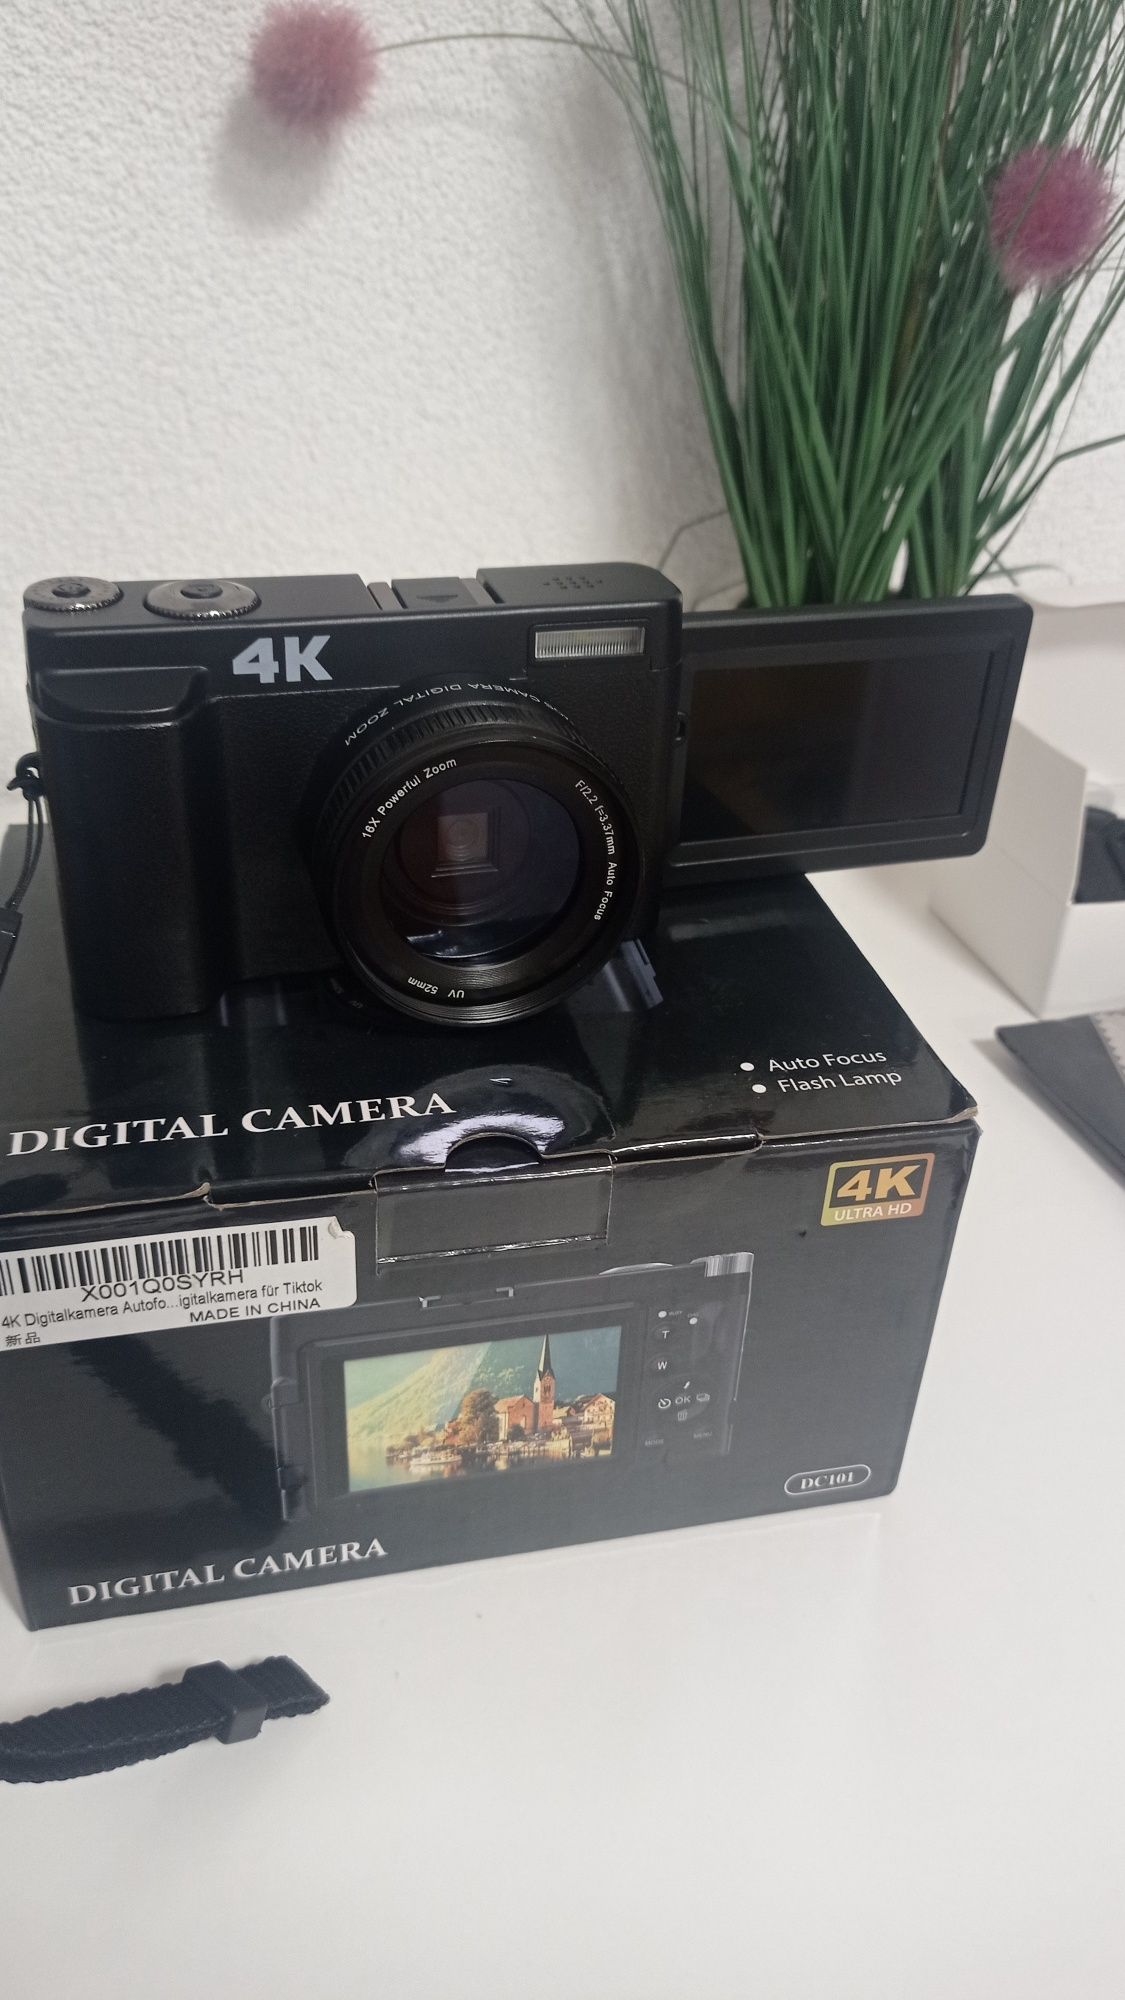 Digital camera 4K